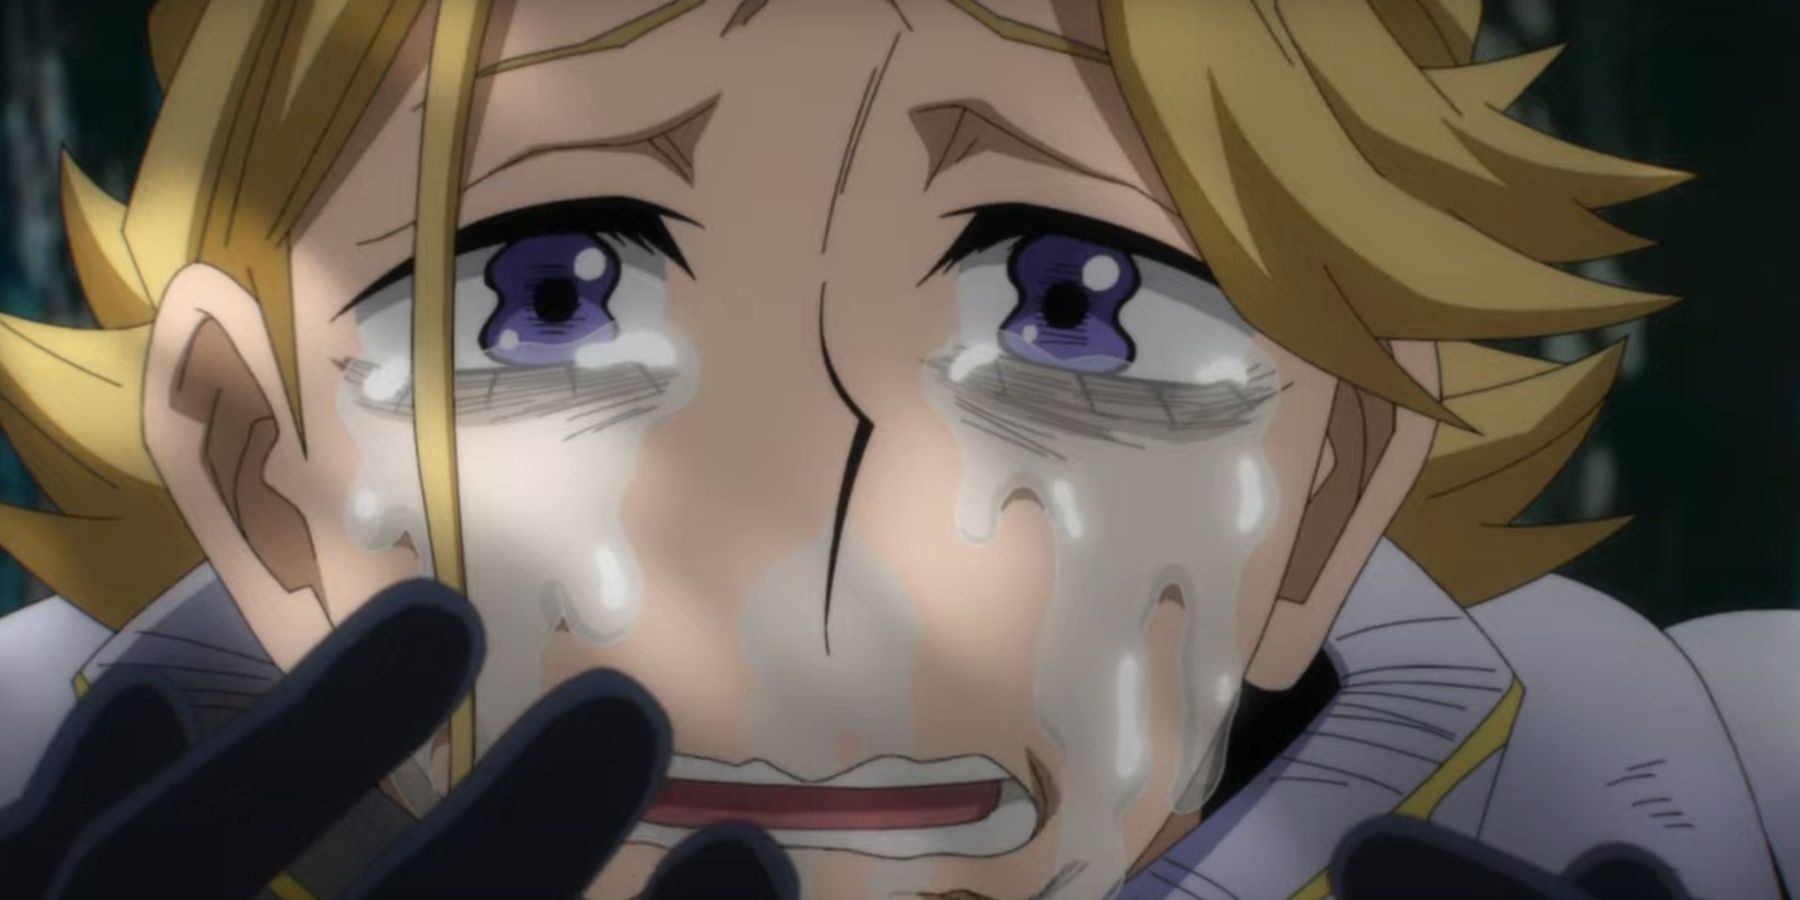 yuga aoyama is crying in his hero costume